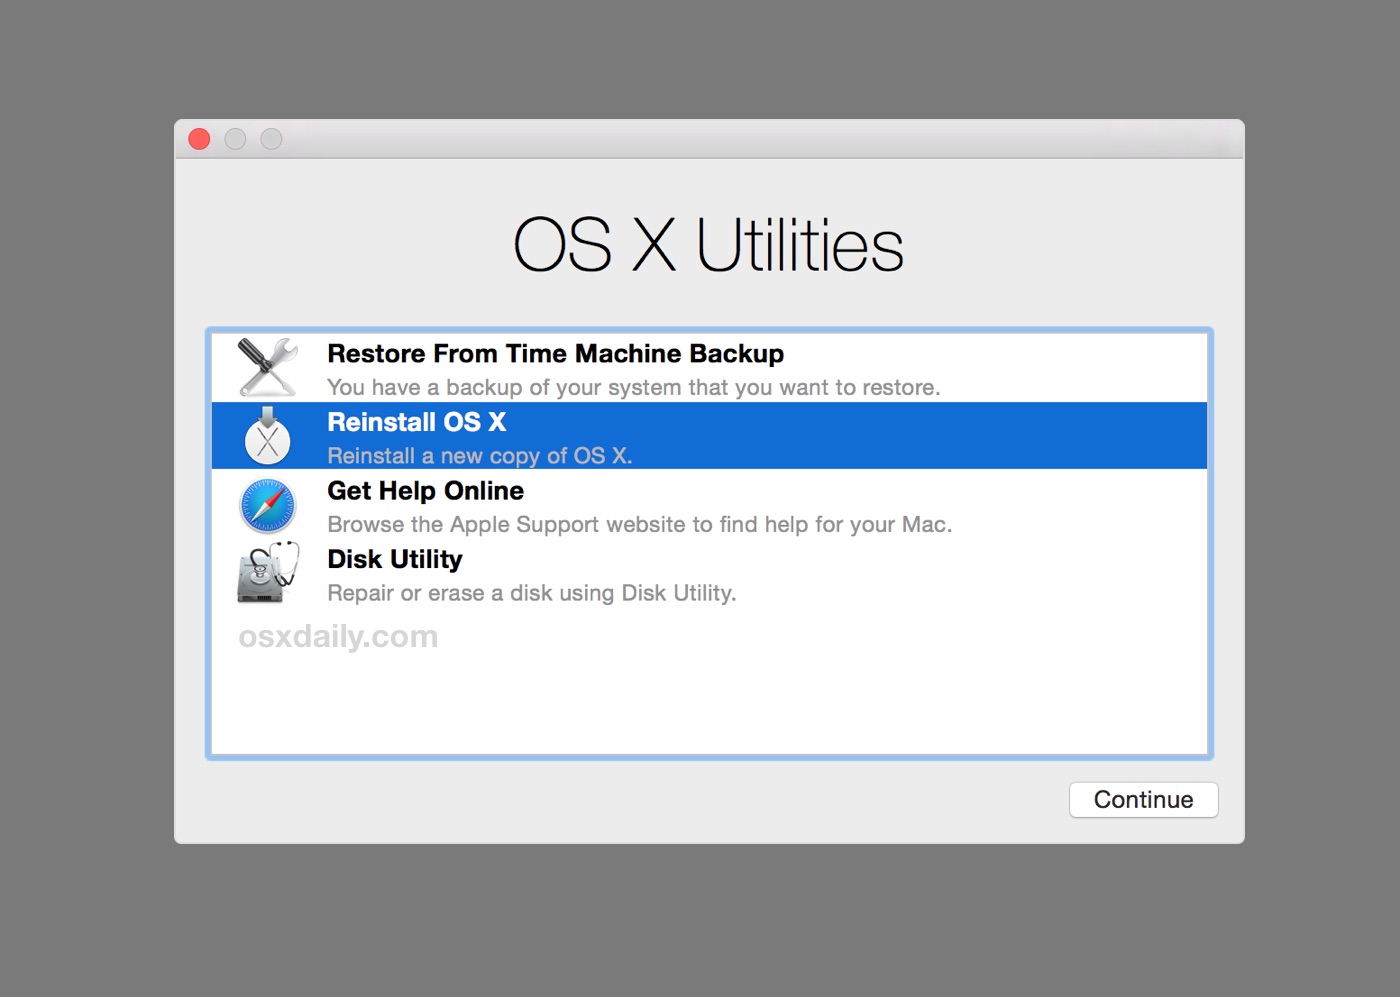 Apc ups software mac os x lion 10 7 5 11g63 11g63 upgrade to 10 8